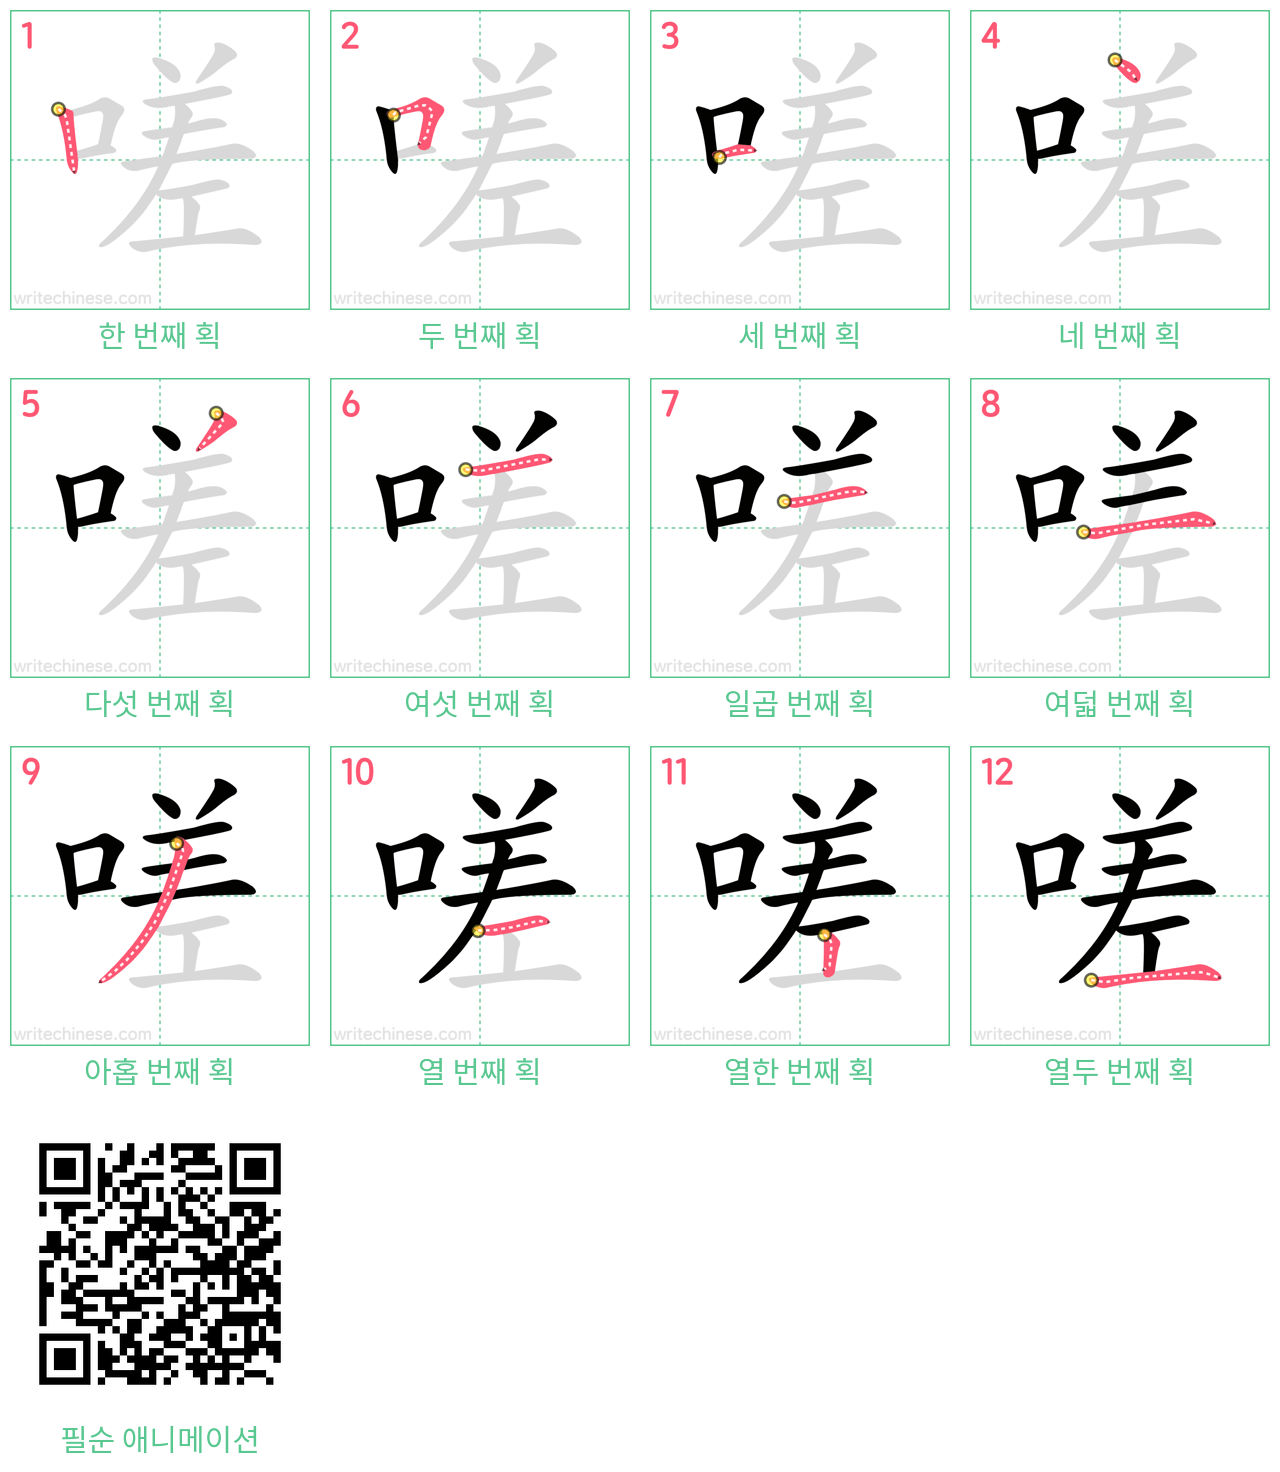 嗟 step-by-step stroke order diagrams